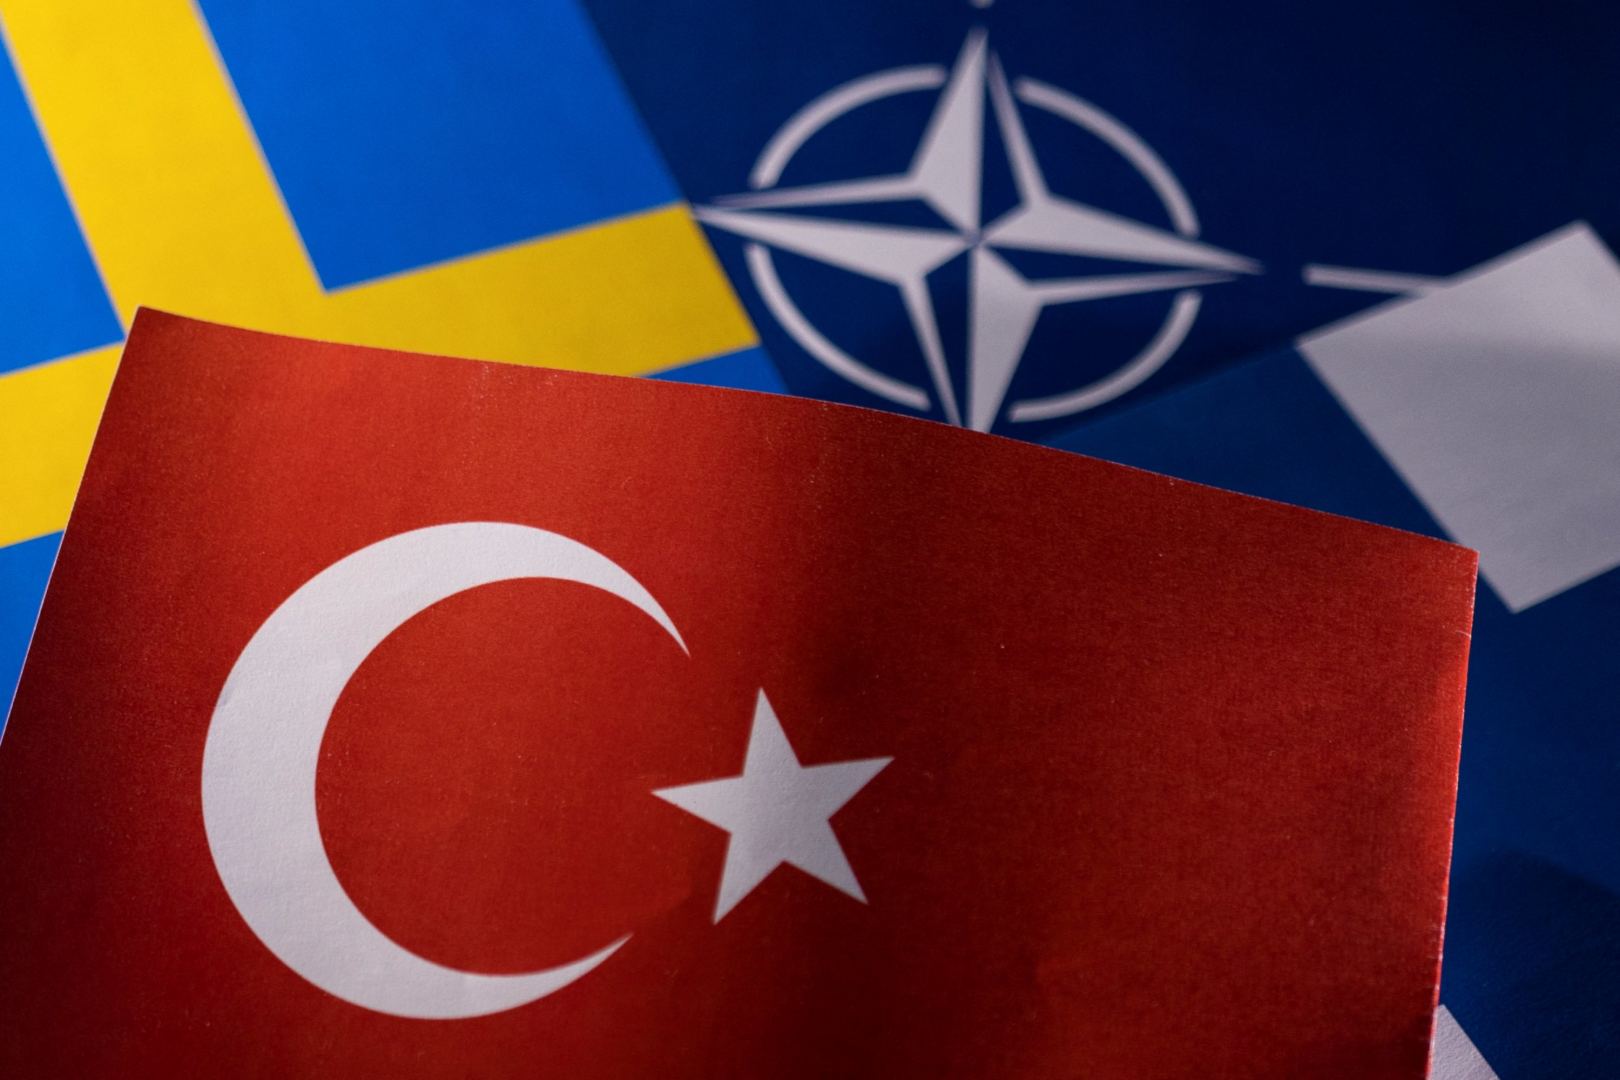 Переговоры со Швецией и Финляндией отменены по требованию Турции